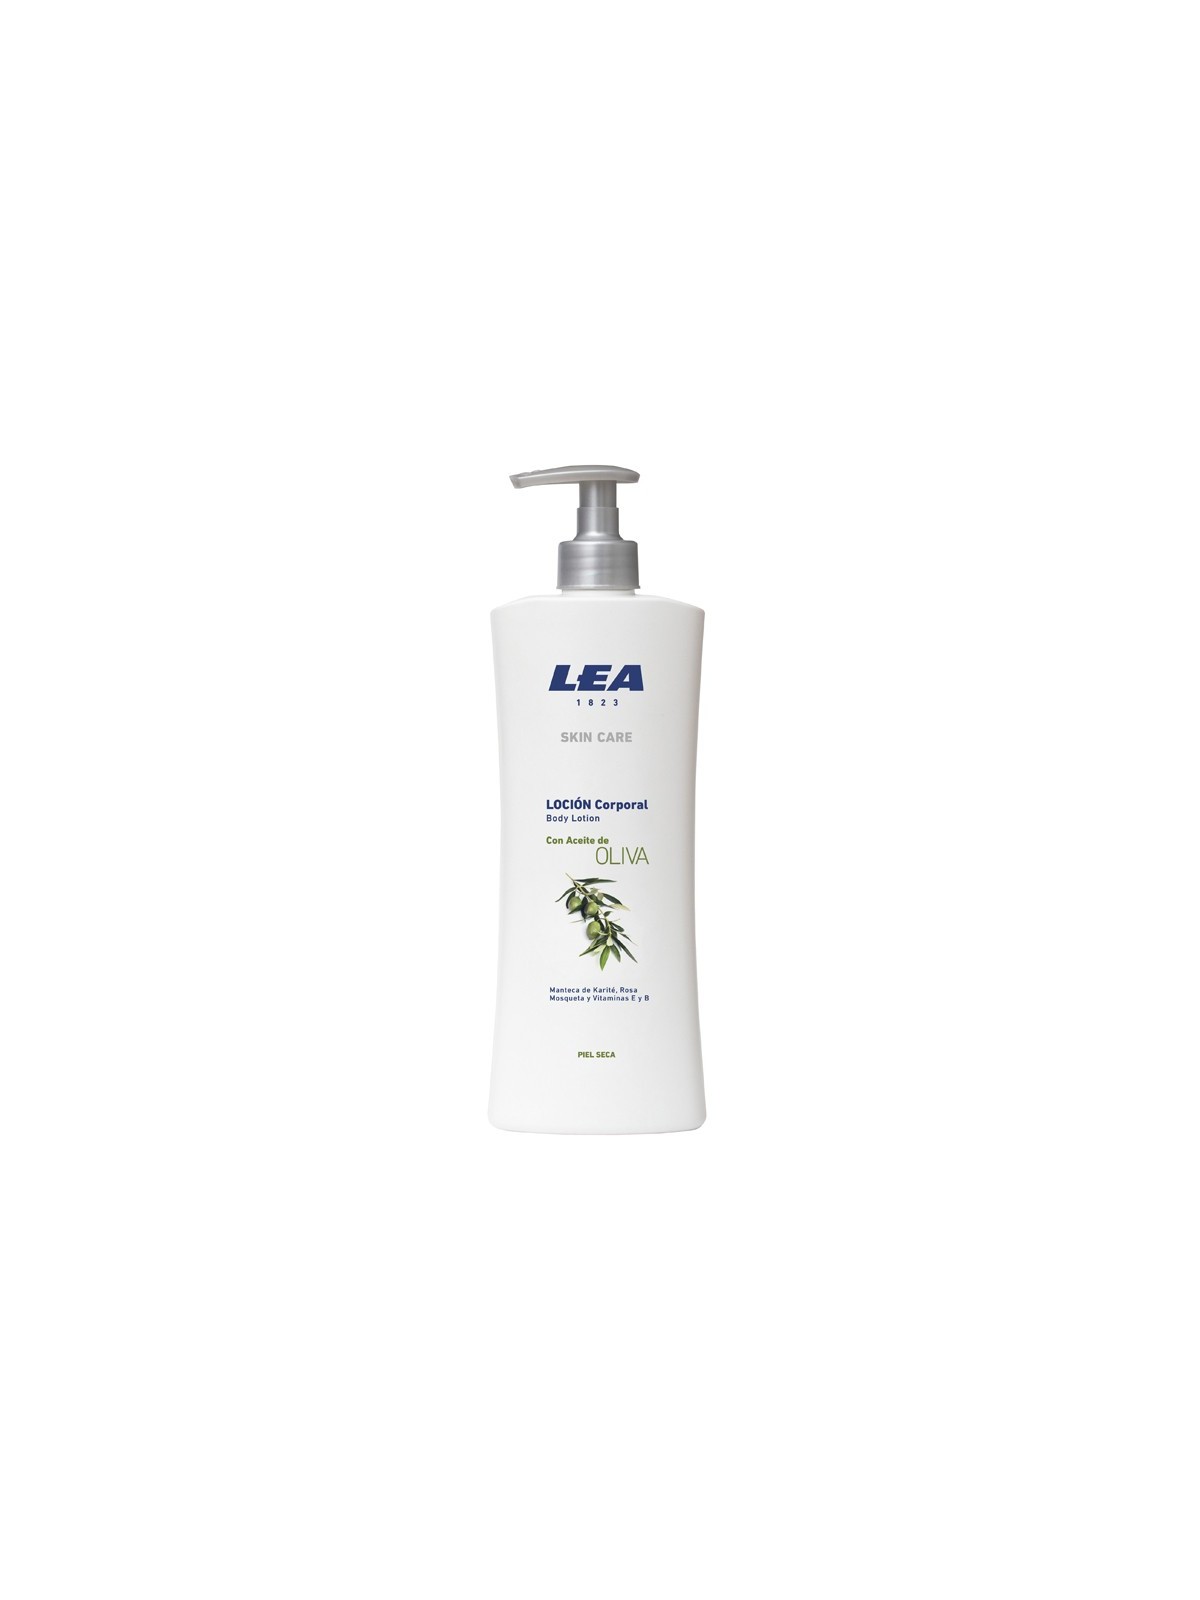 Comprar LEA skin care loción nutritiva corporal con aceite de olivia 400ml. en Corporal por sólo 3,75 € o un precio específico de 3,75 € en Thalie Care